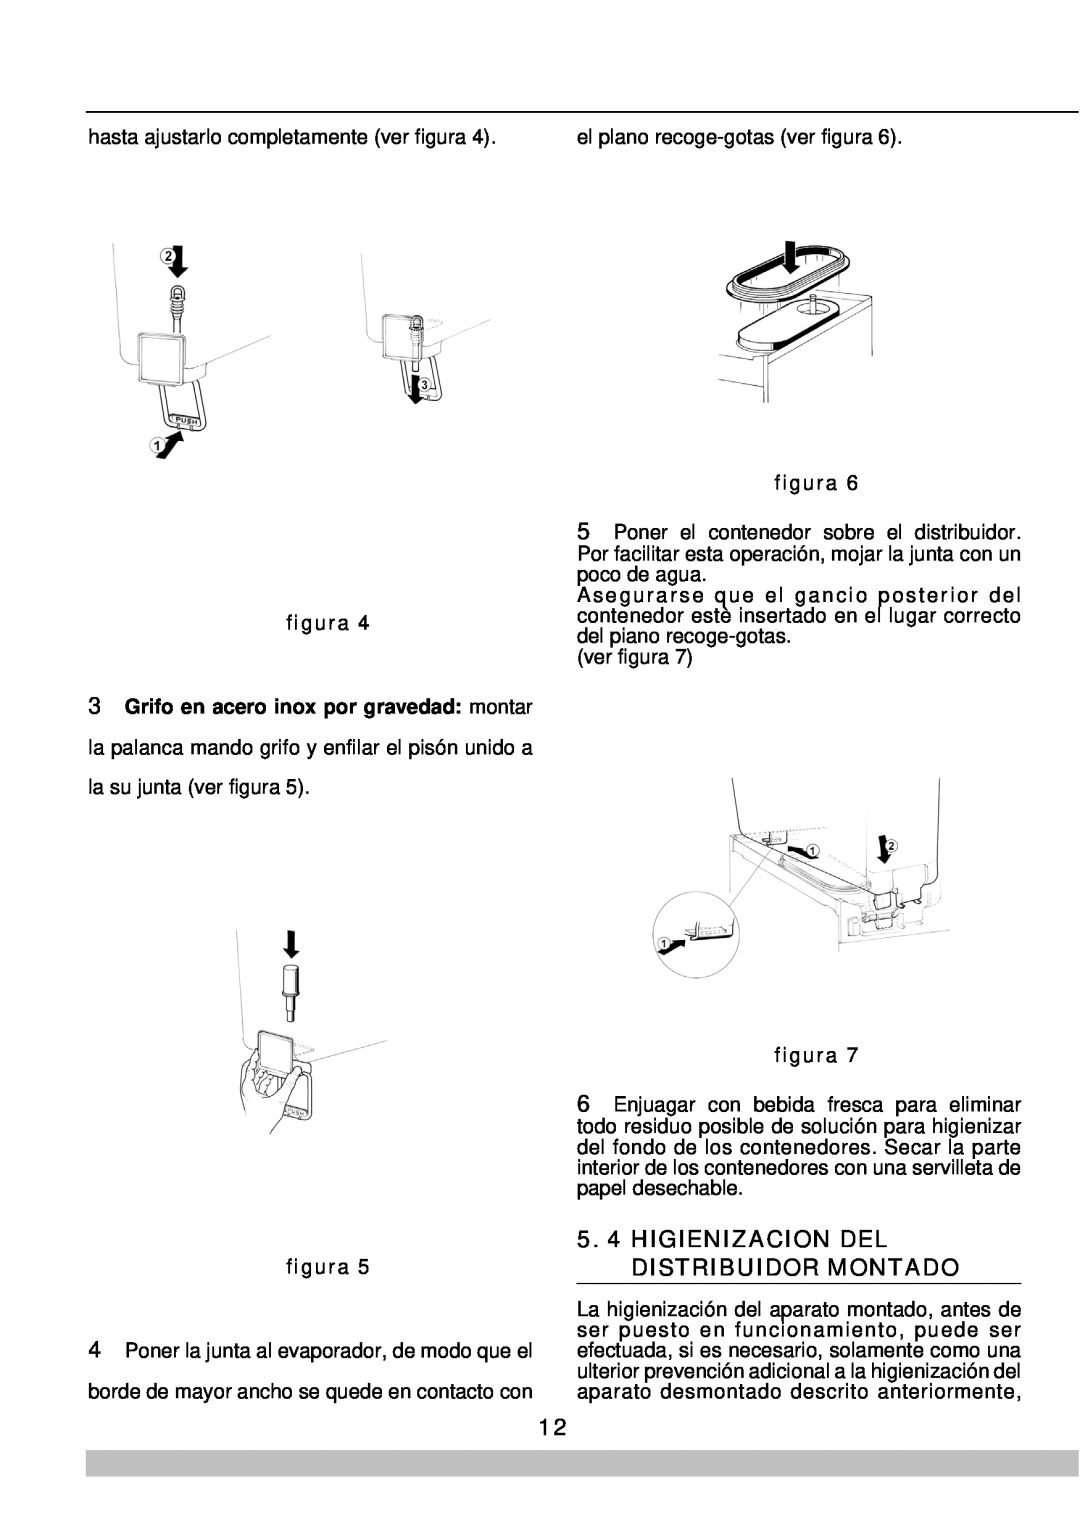 Cecilware 8/1, 8/4 manual Higienizacion Del Distribuidor Montado, figura 